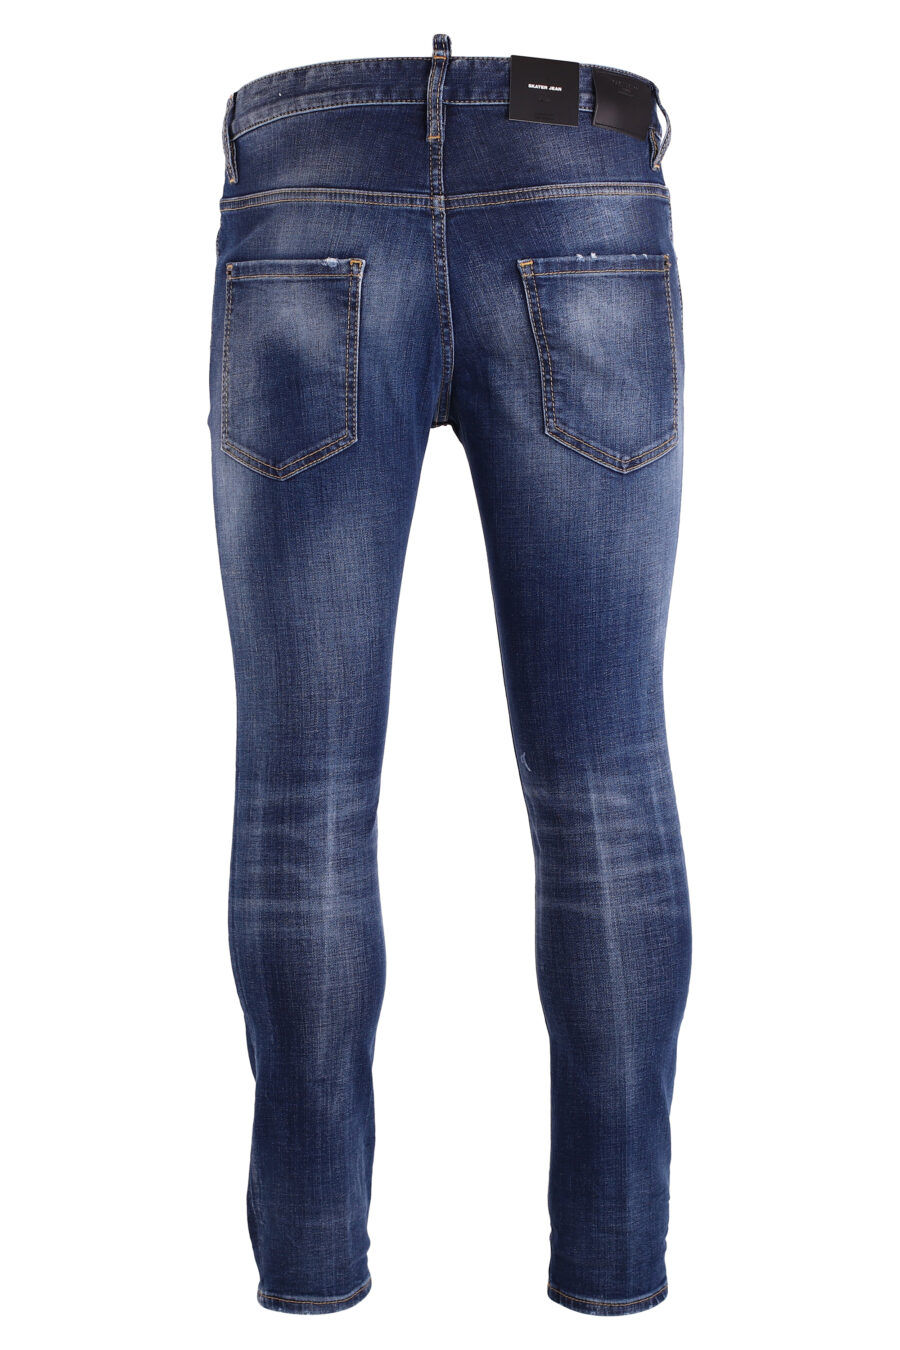 Pantalón vaquero "skater jean" azul desgastado - IMG 8992